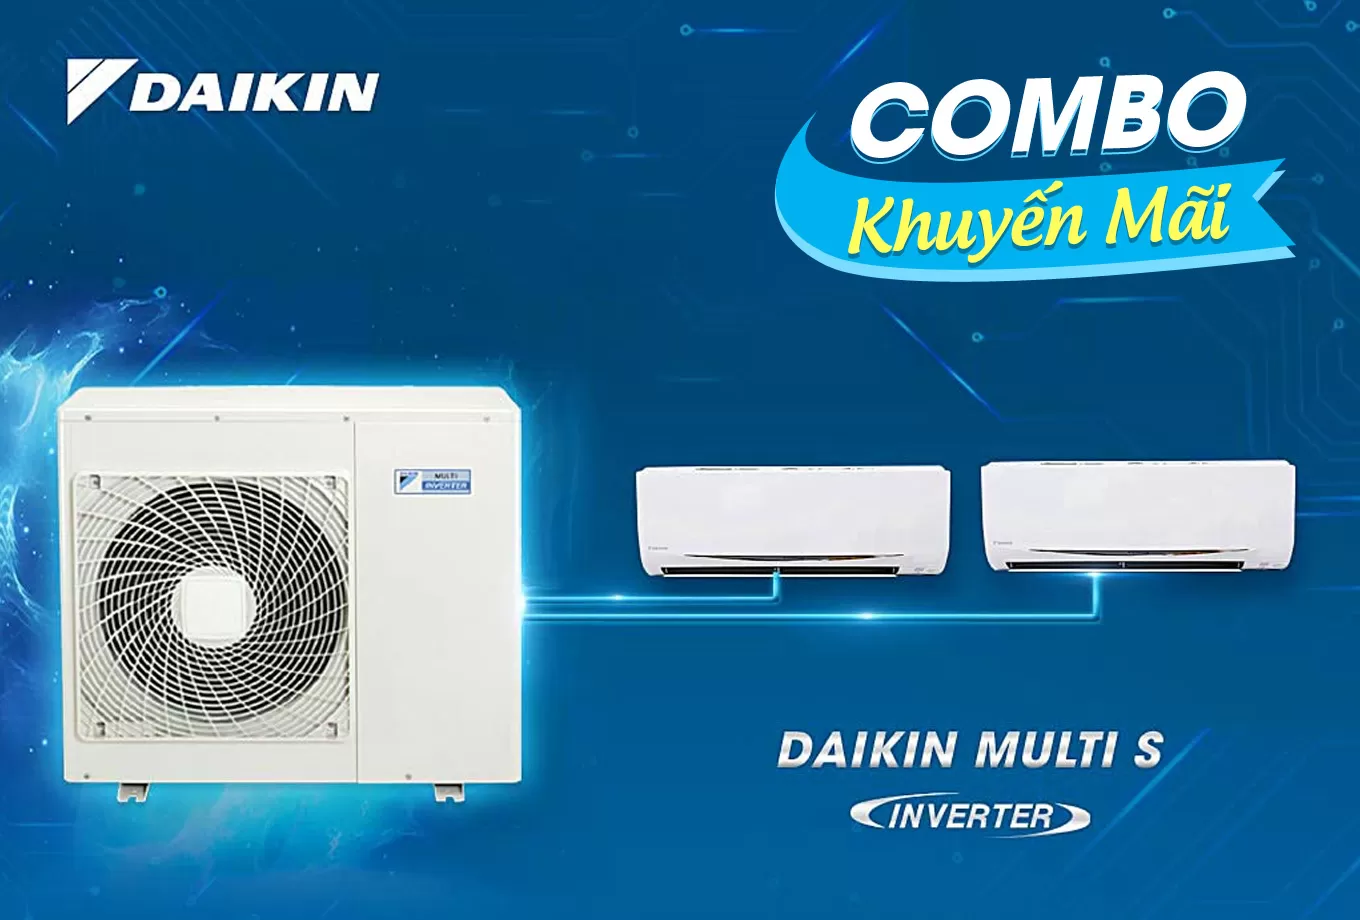 (Combo khuyến mãi) Hệ thống máy lạnh Daikin multi s inverter 2.0HP - 1 dàn nóng 2 dàn lạnh (1.0 + 1.0Hp) MKC50RVMV-CTKC25RVMV+CTKC25RVMV